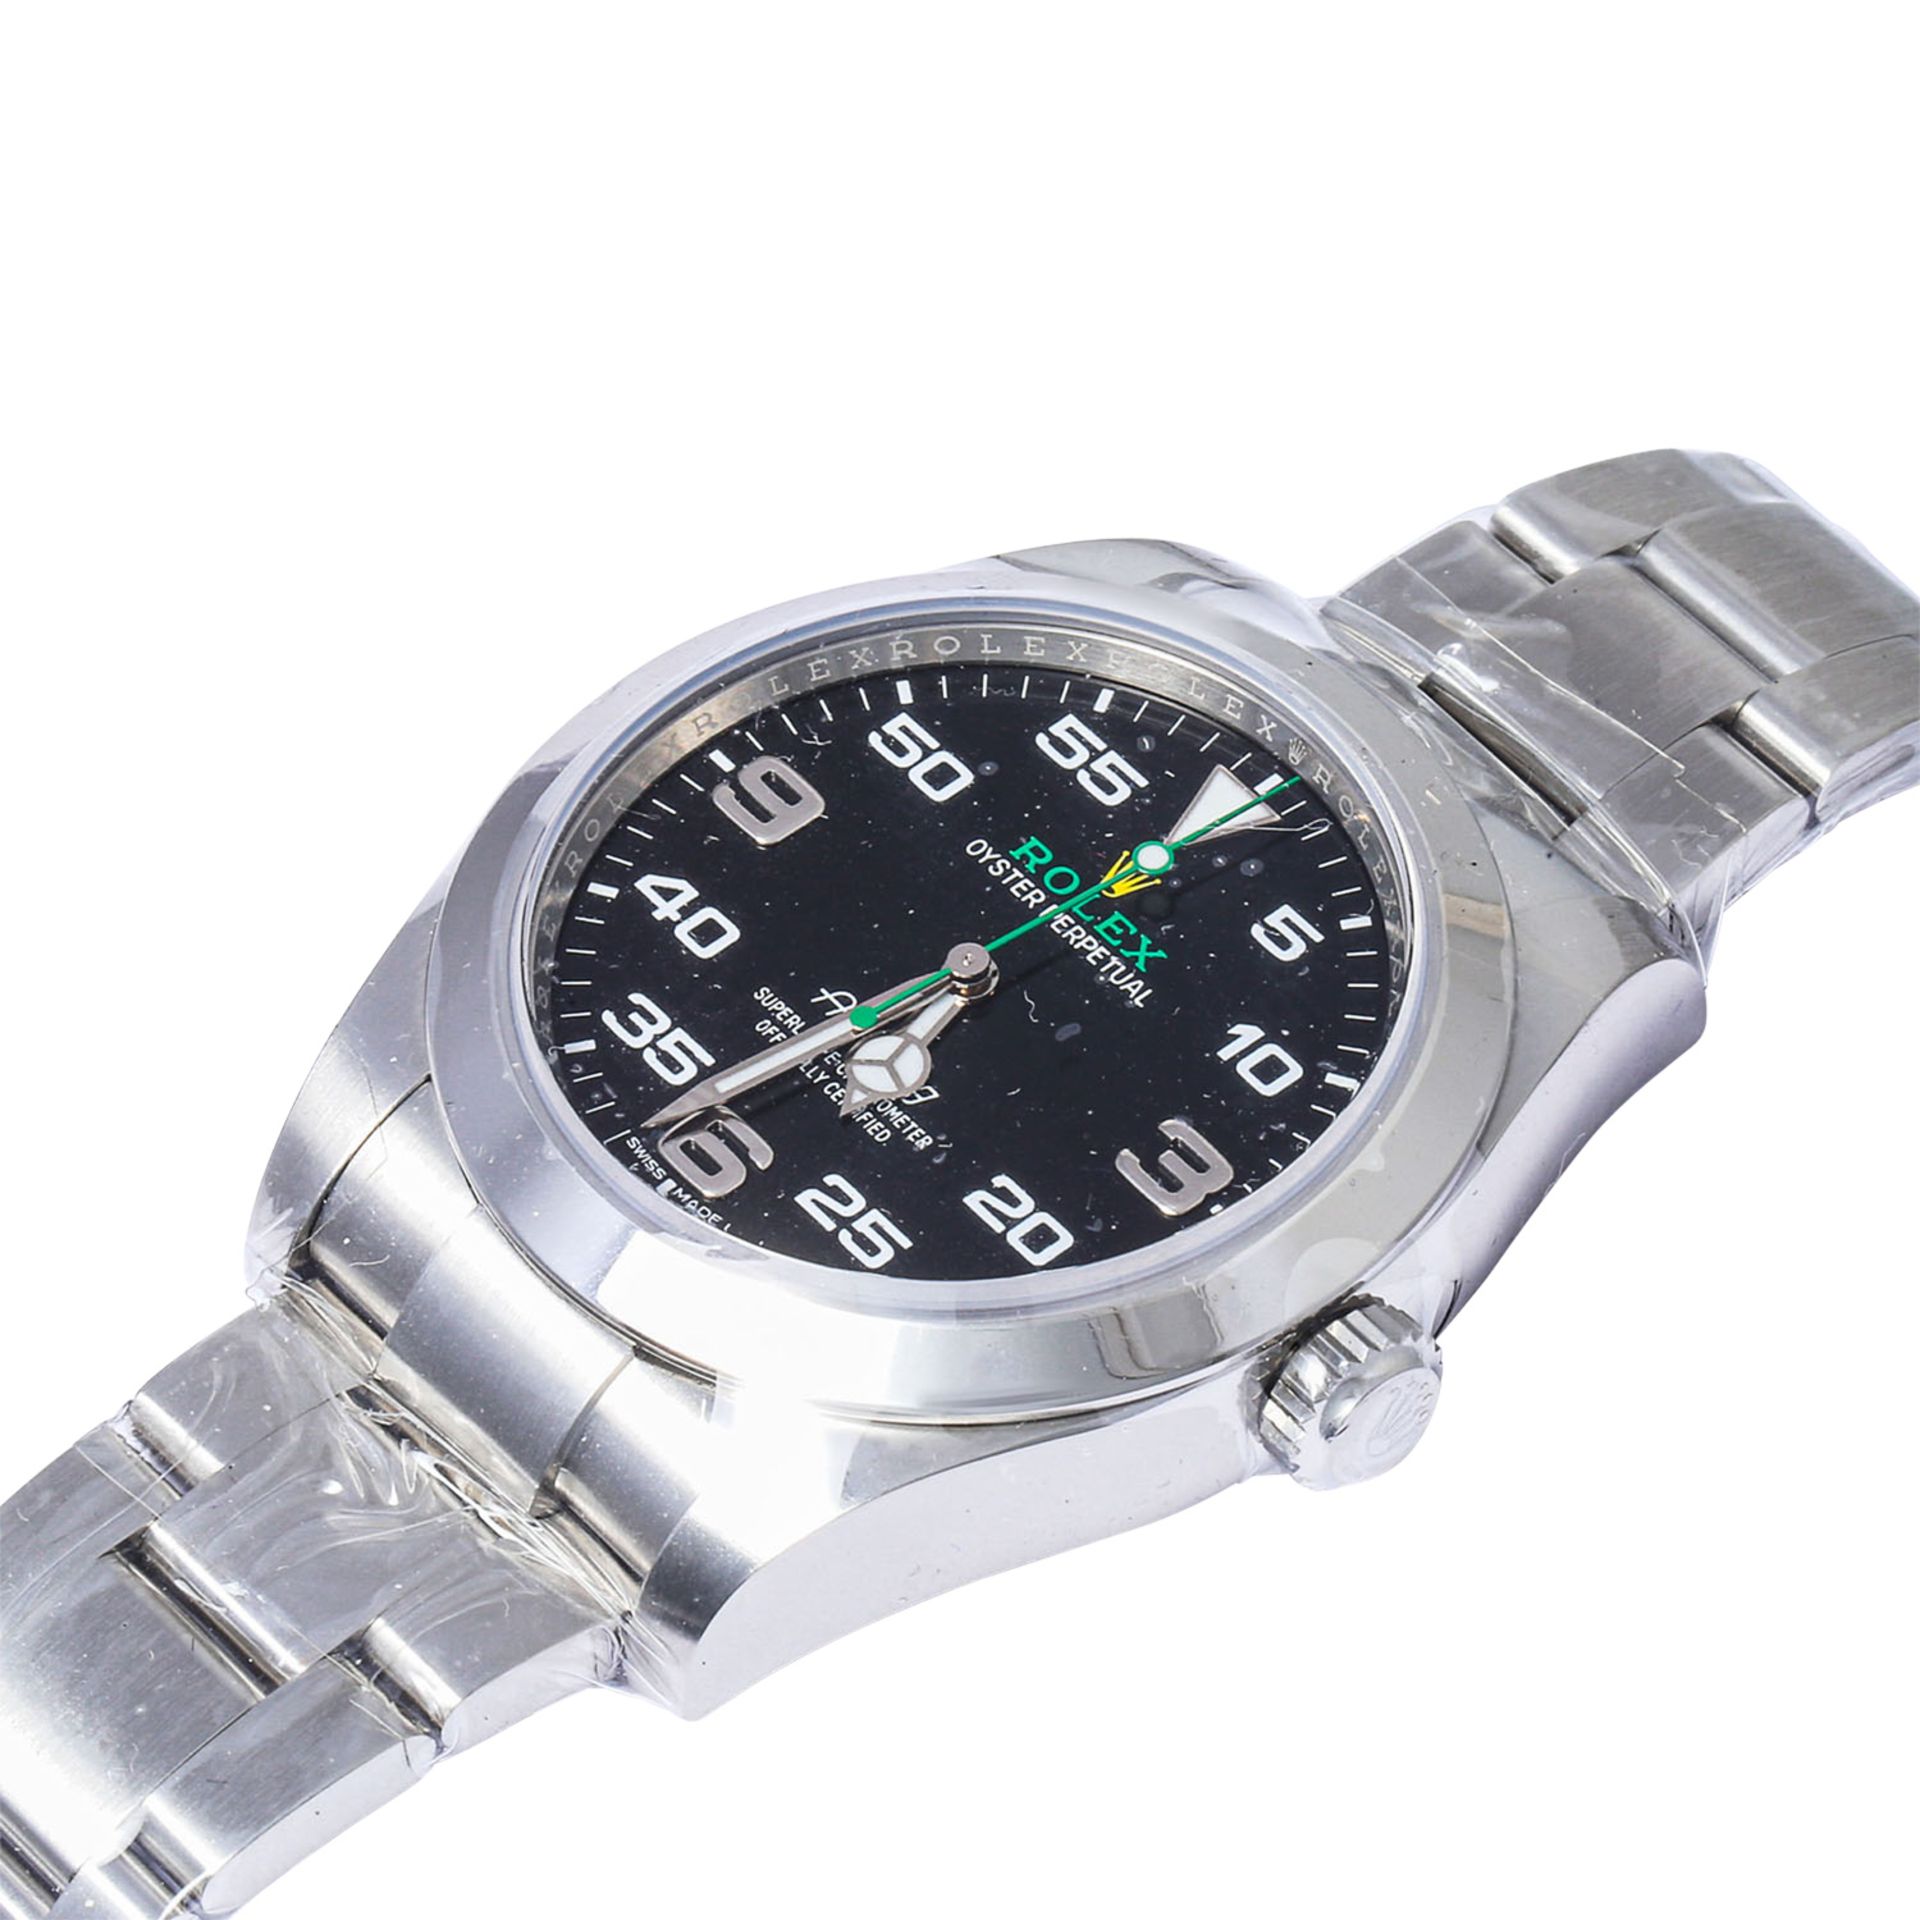 ROLEX Air King, Ref. 116900-0001. Armbanduhr. Eingestelltes Modell. - Bild 4 aus 7